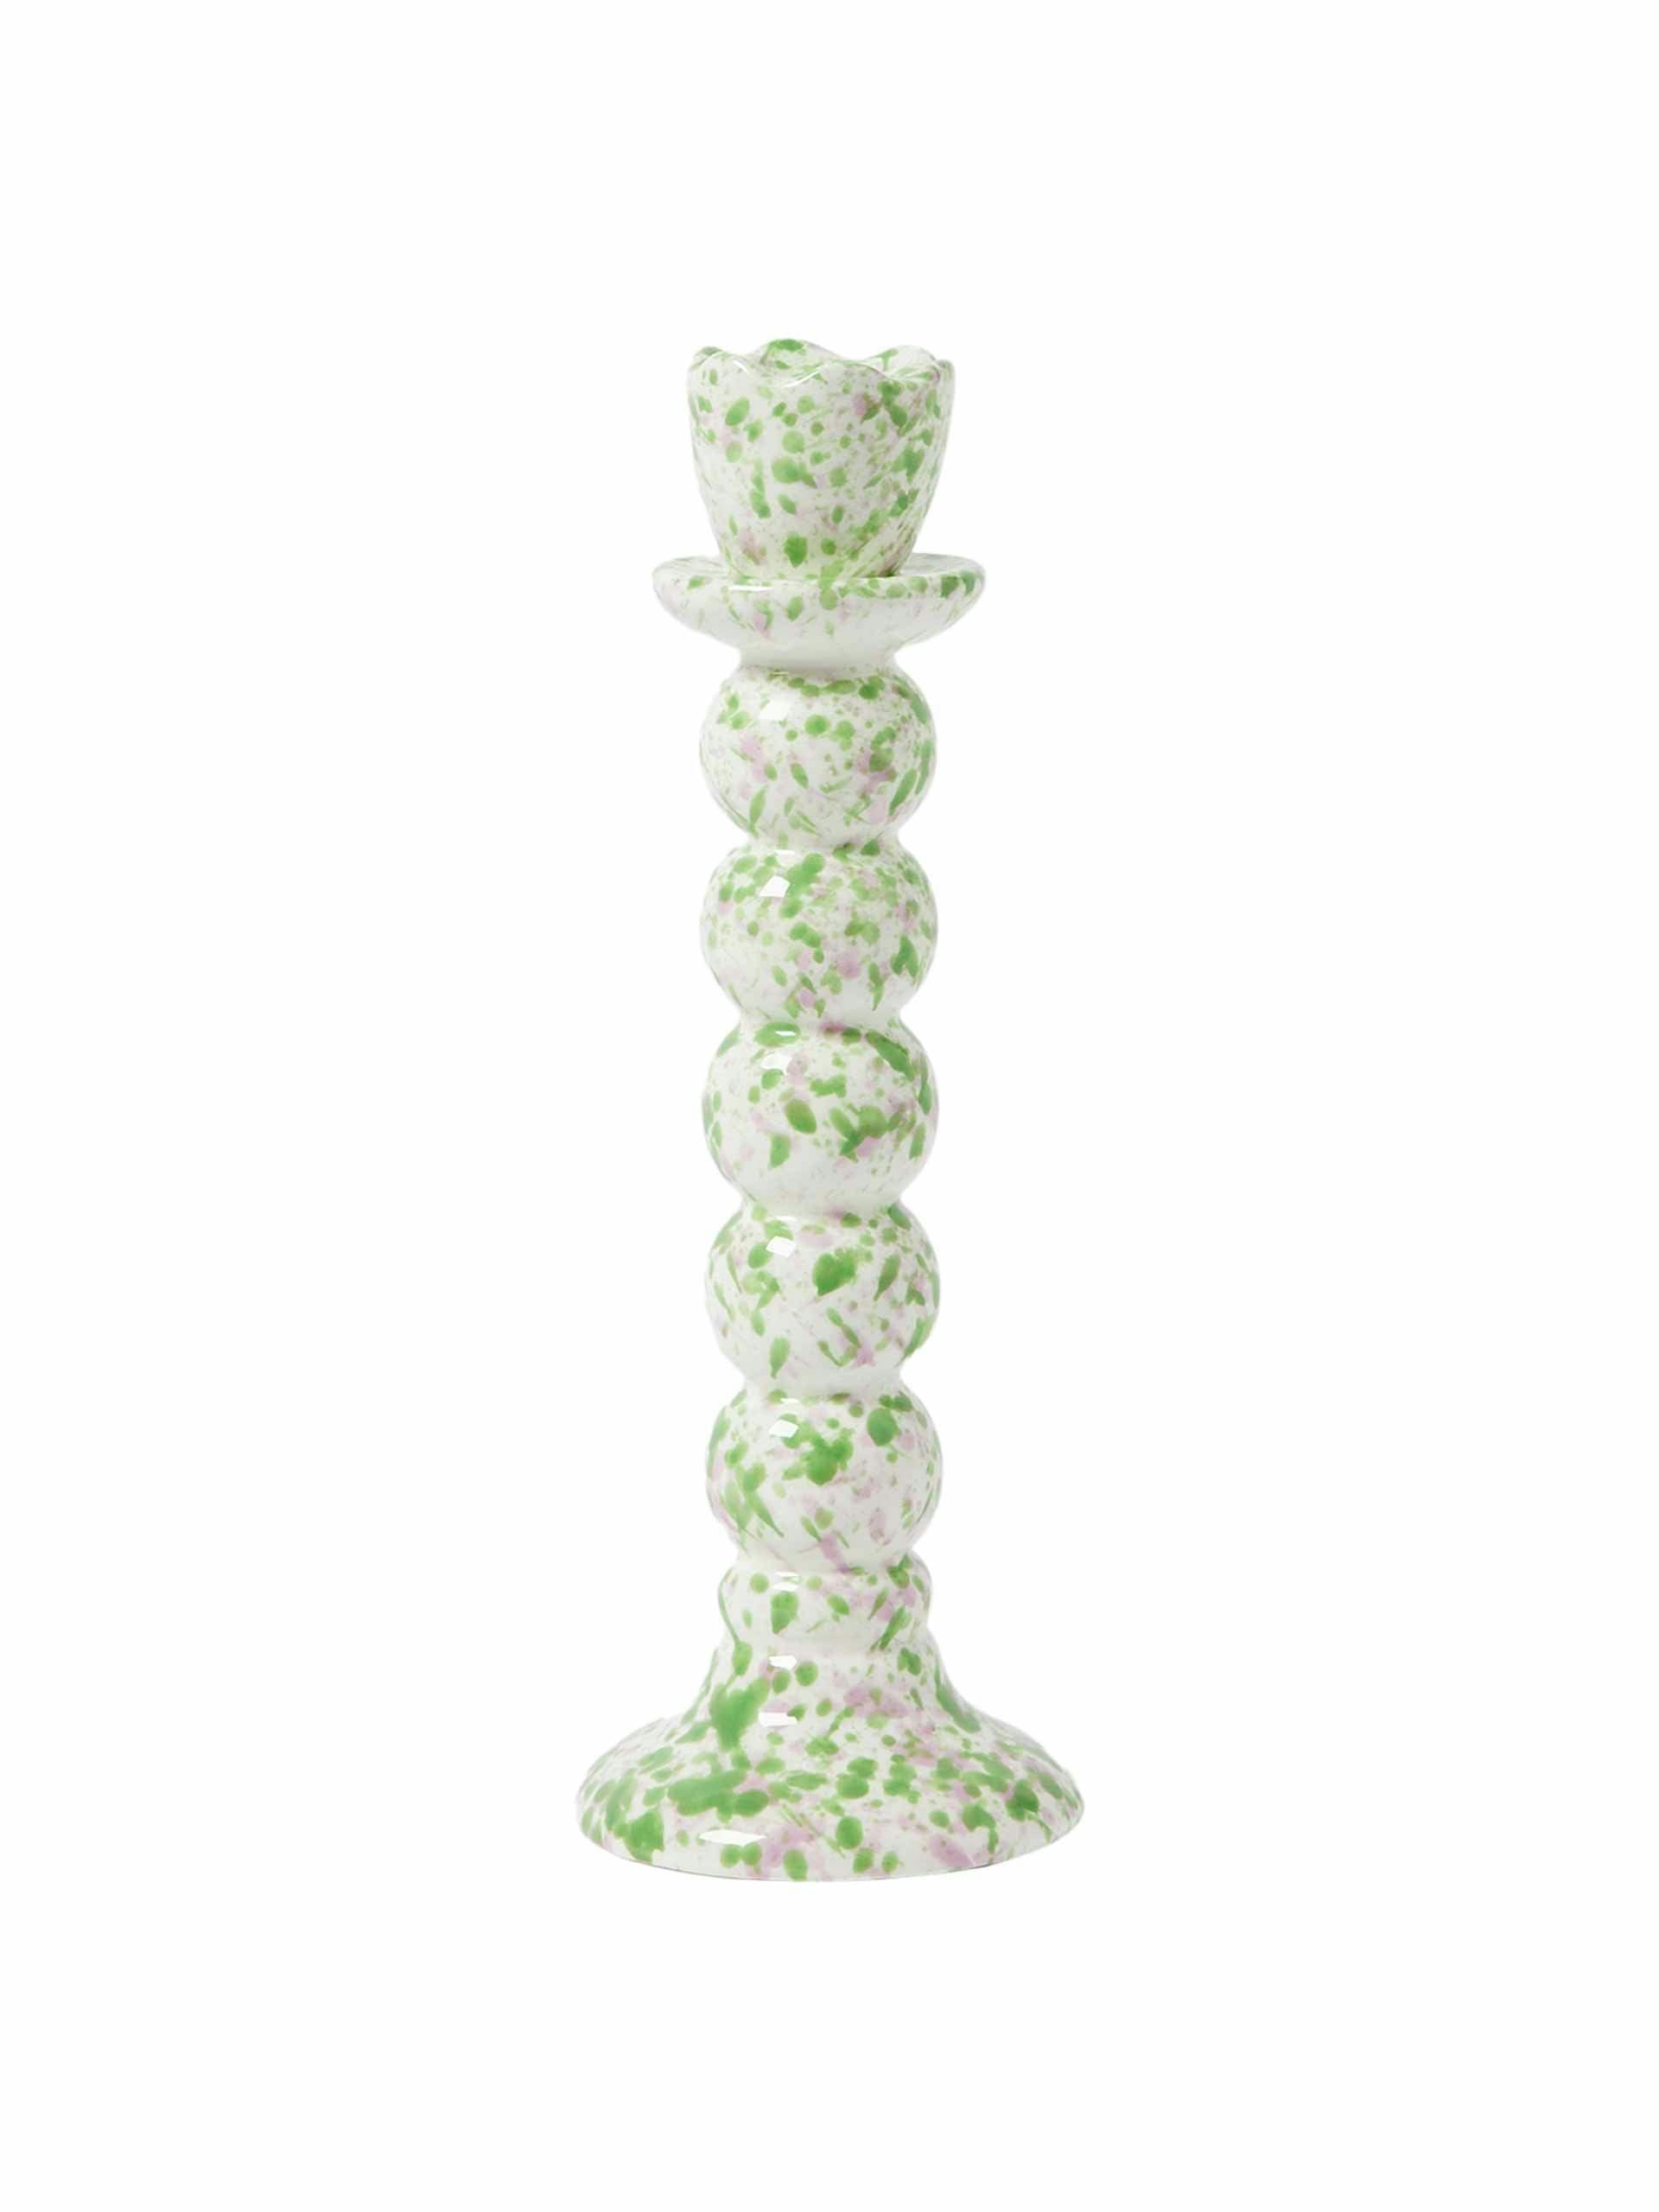 Splatter green ceramic candlestick holder